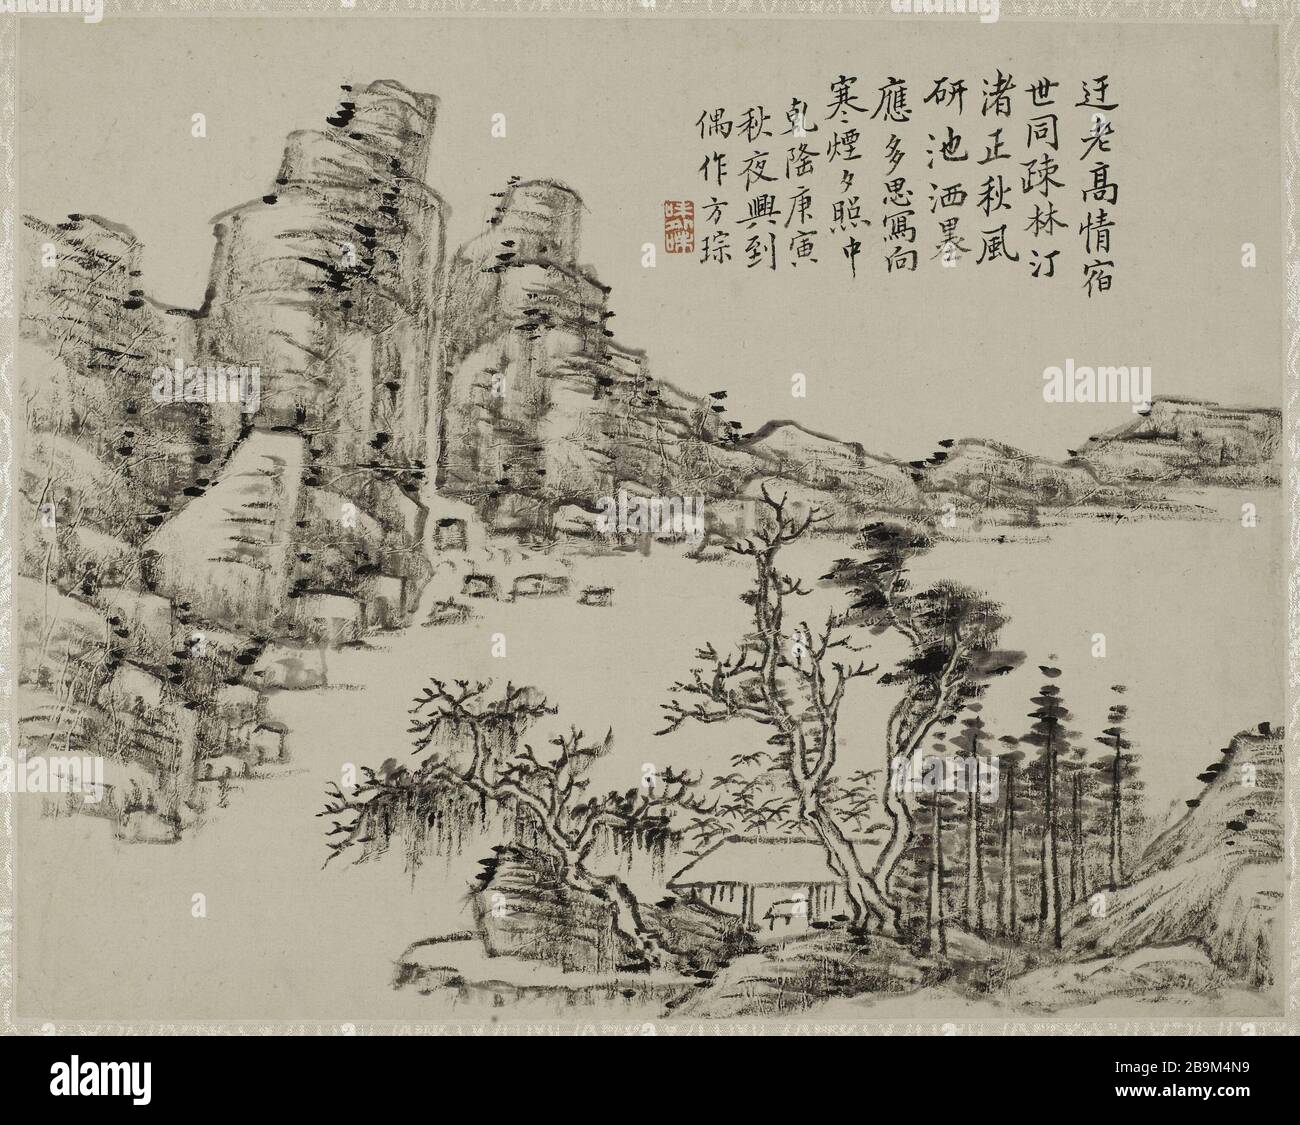 Landscape Fang Cong (actif au XVIIIème siècle). "Paysage". Encre sur papier, 1770. Chine, dynastie Qing. Parigi, musée Cernuschi. Foto Stock